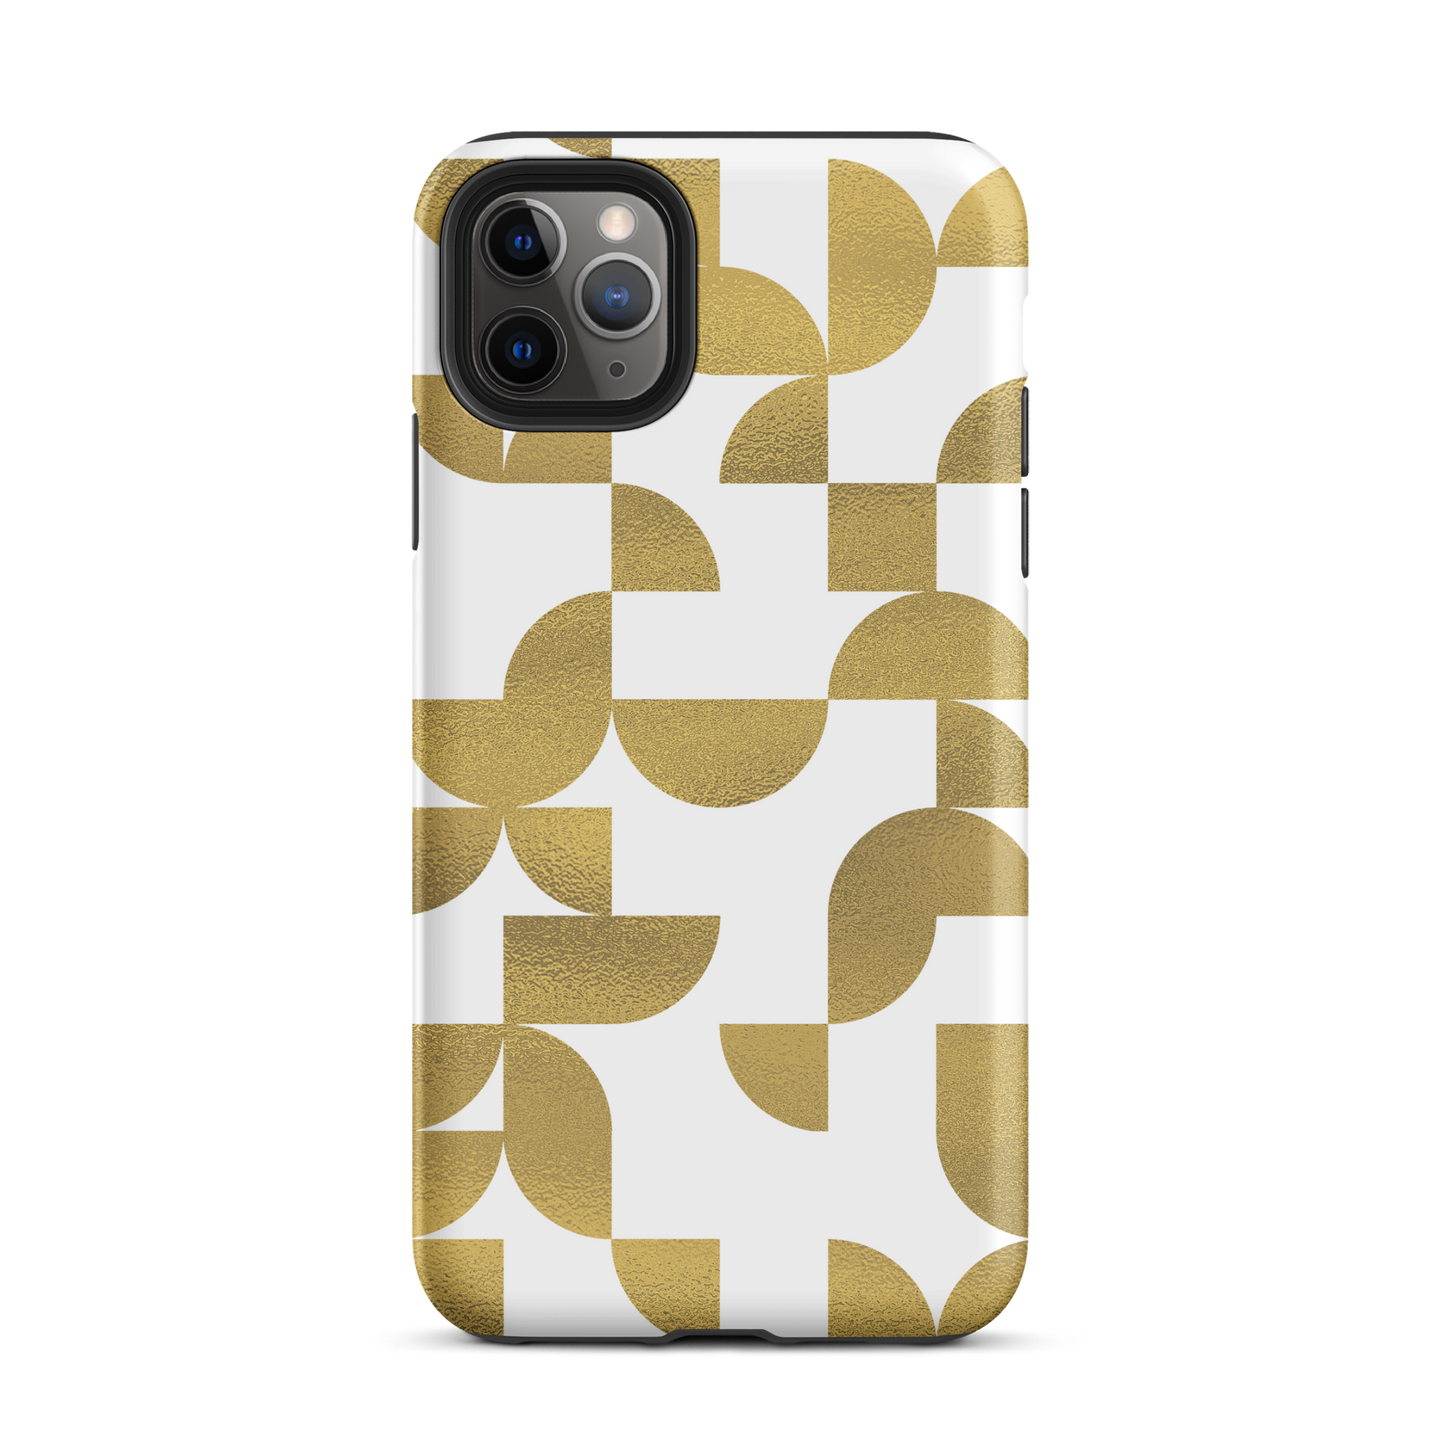 iPhone 11 pro max tough case in Geometria I gold design